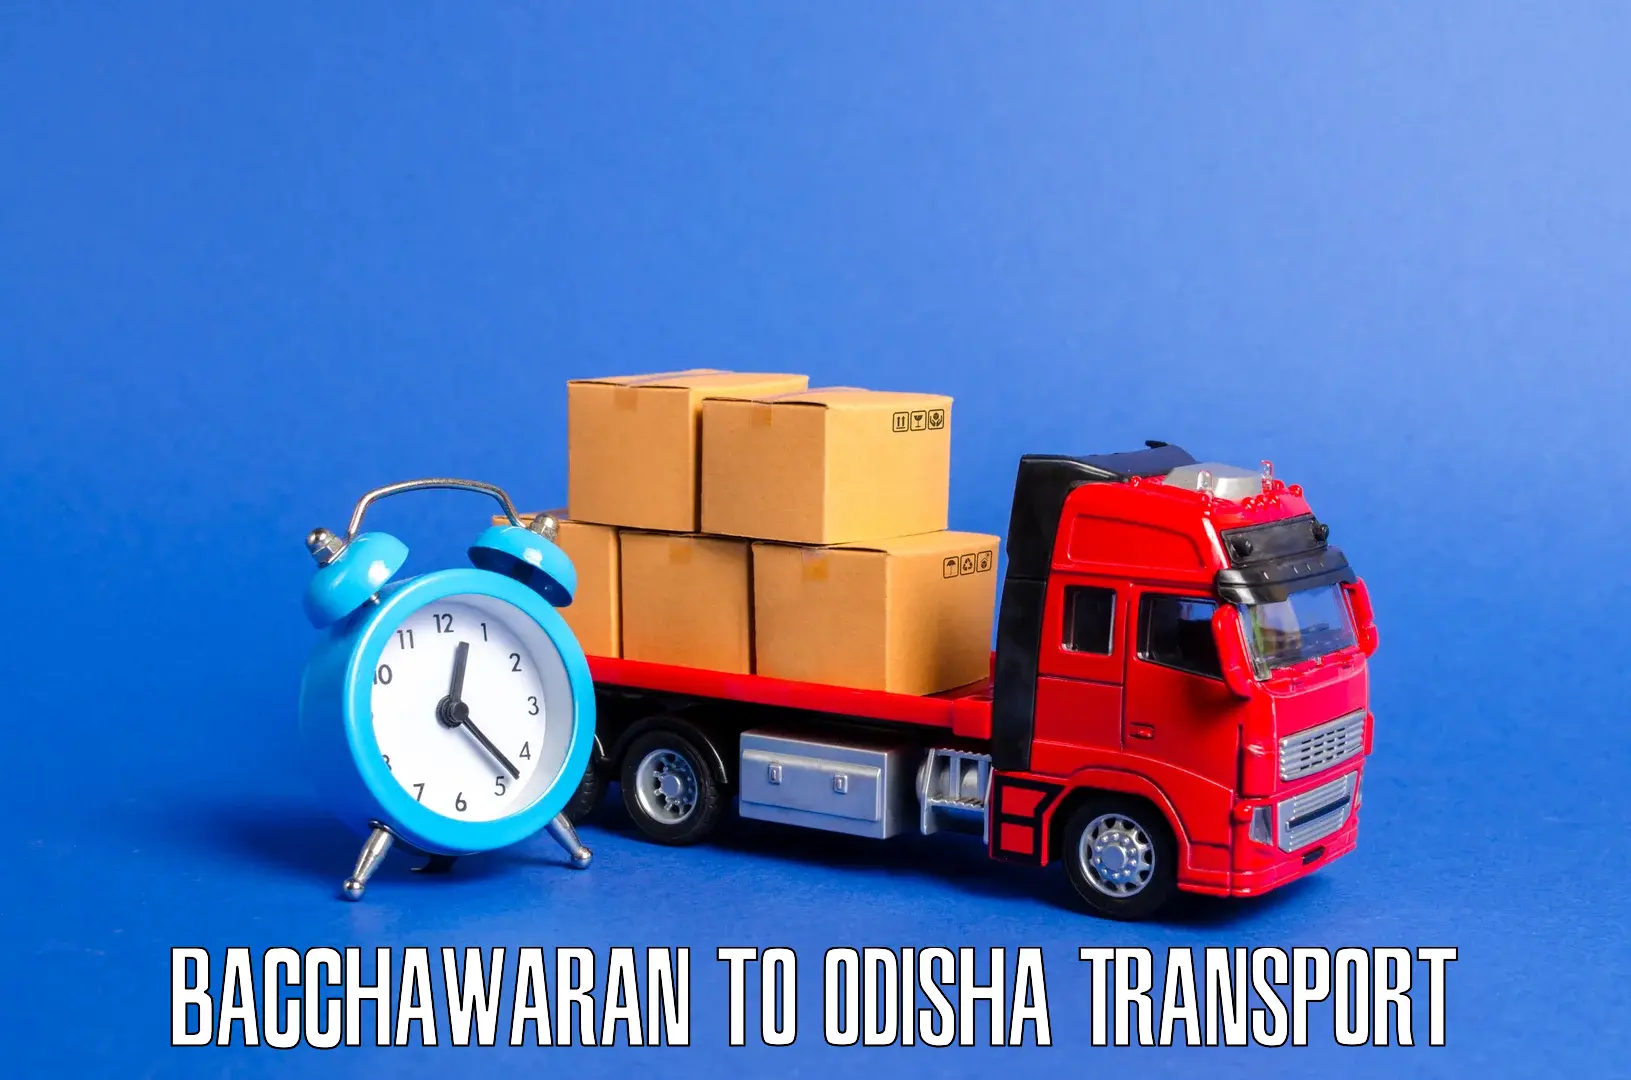 Nearest transport service Bacchawaran to Odisha